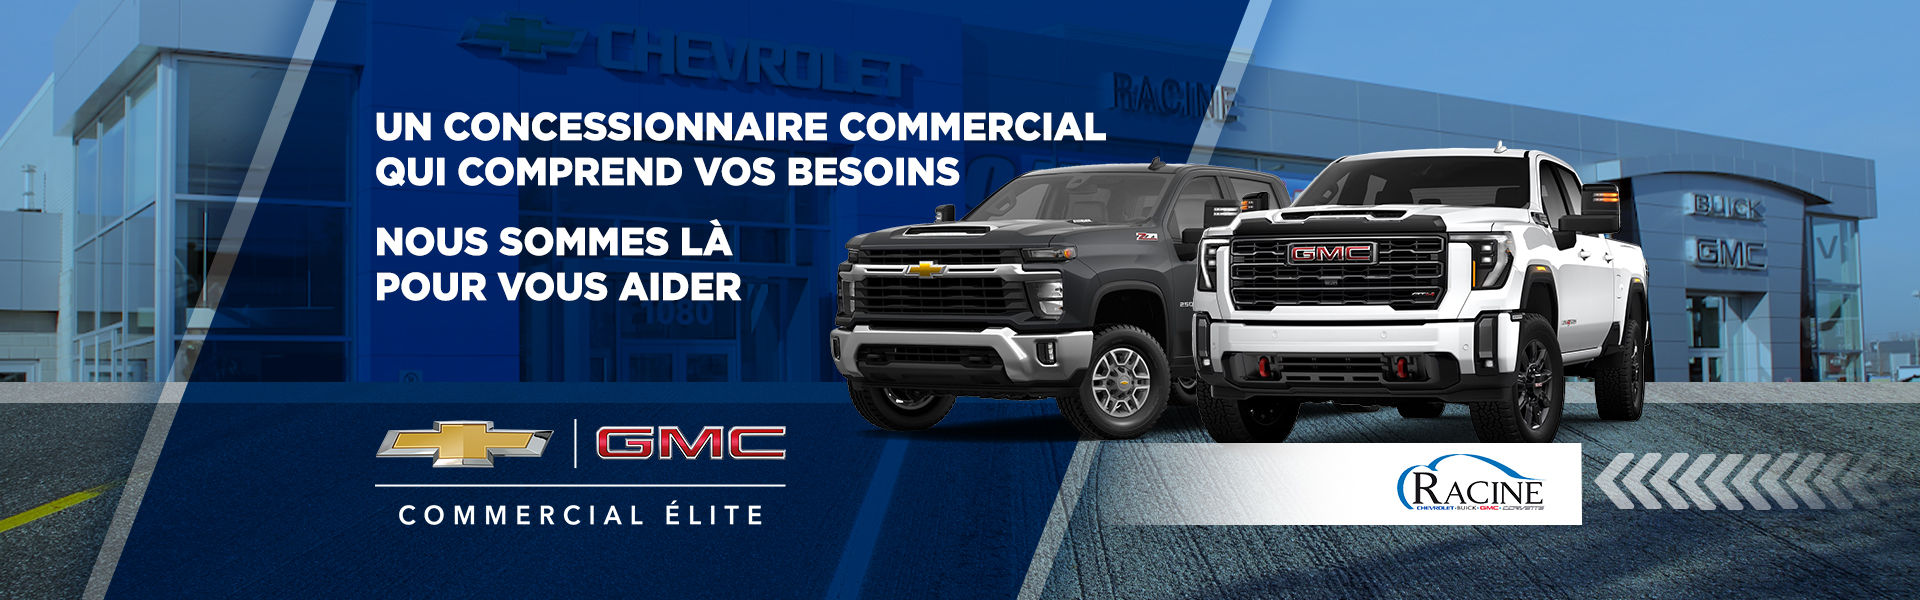 Chevrolet GMC - Commercial Élite